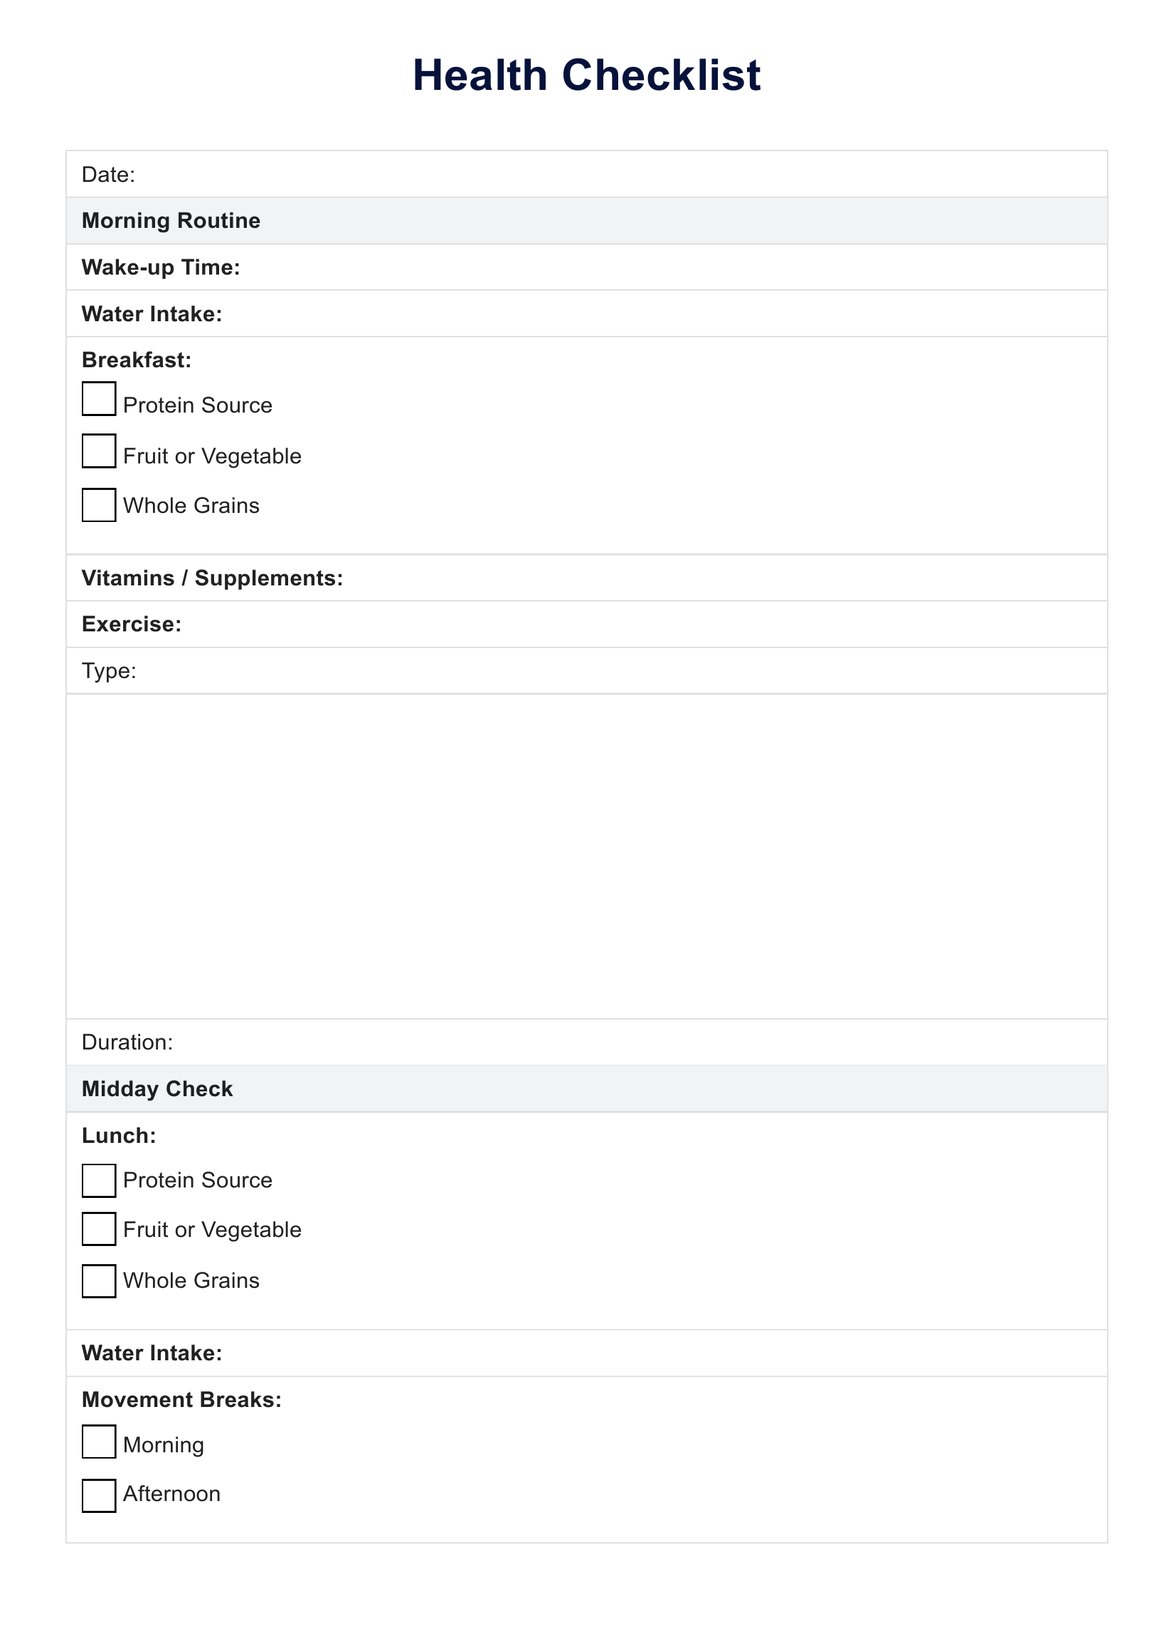 Health Checklist PDF Example